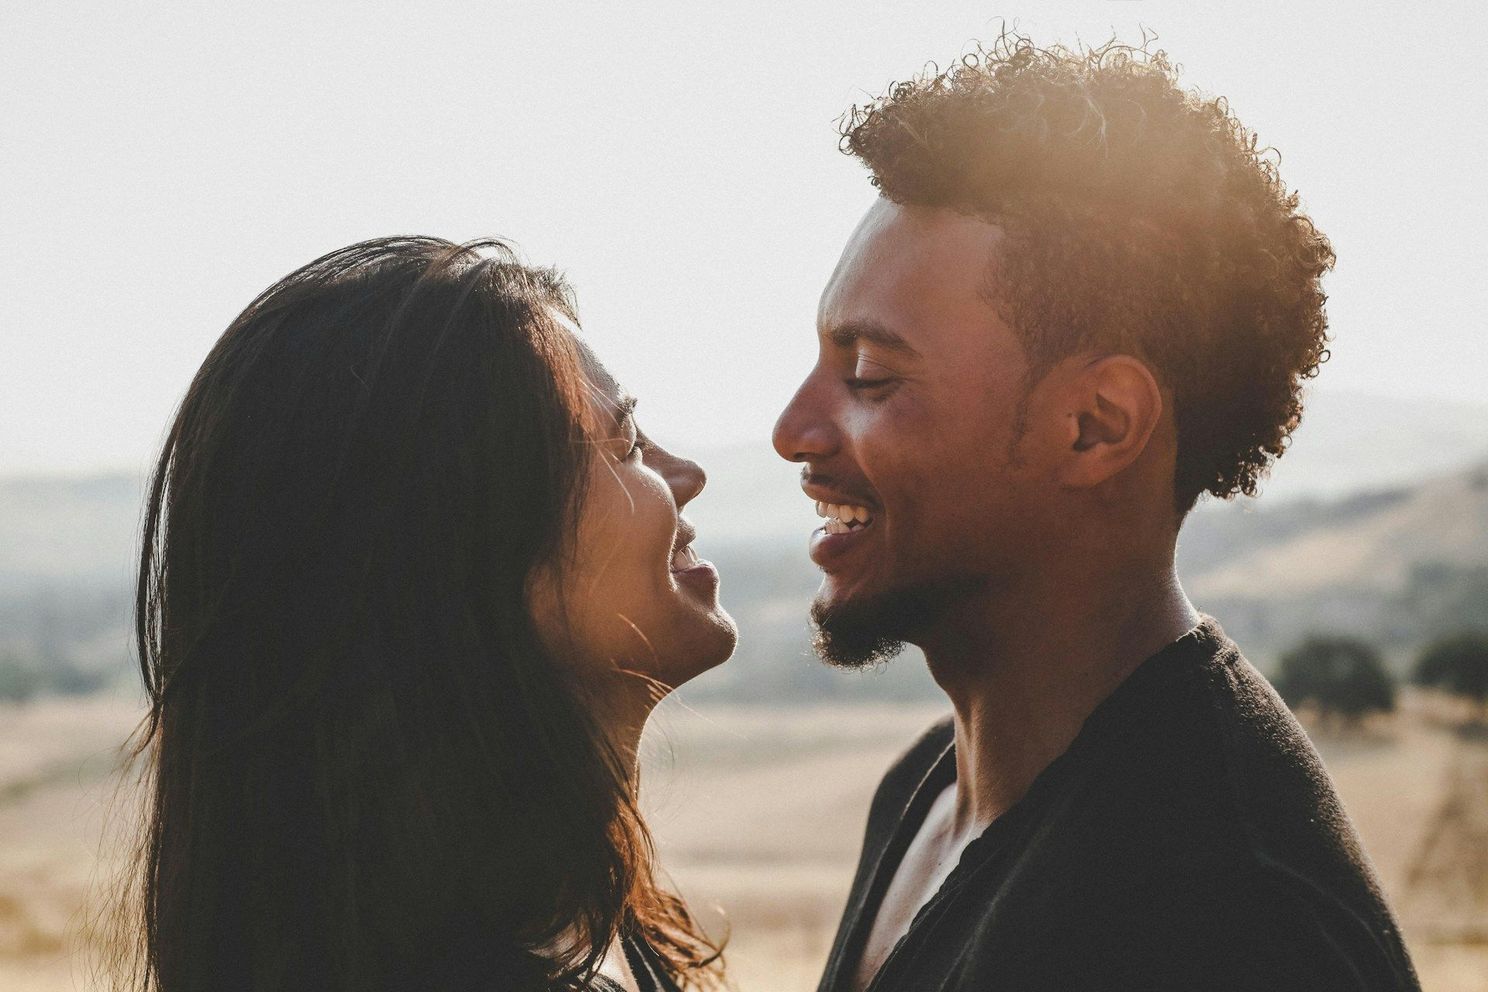 Onderzoekers doen verrassende ontdekking: "Op deze manier kunnen koppels hun relatie versterken"